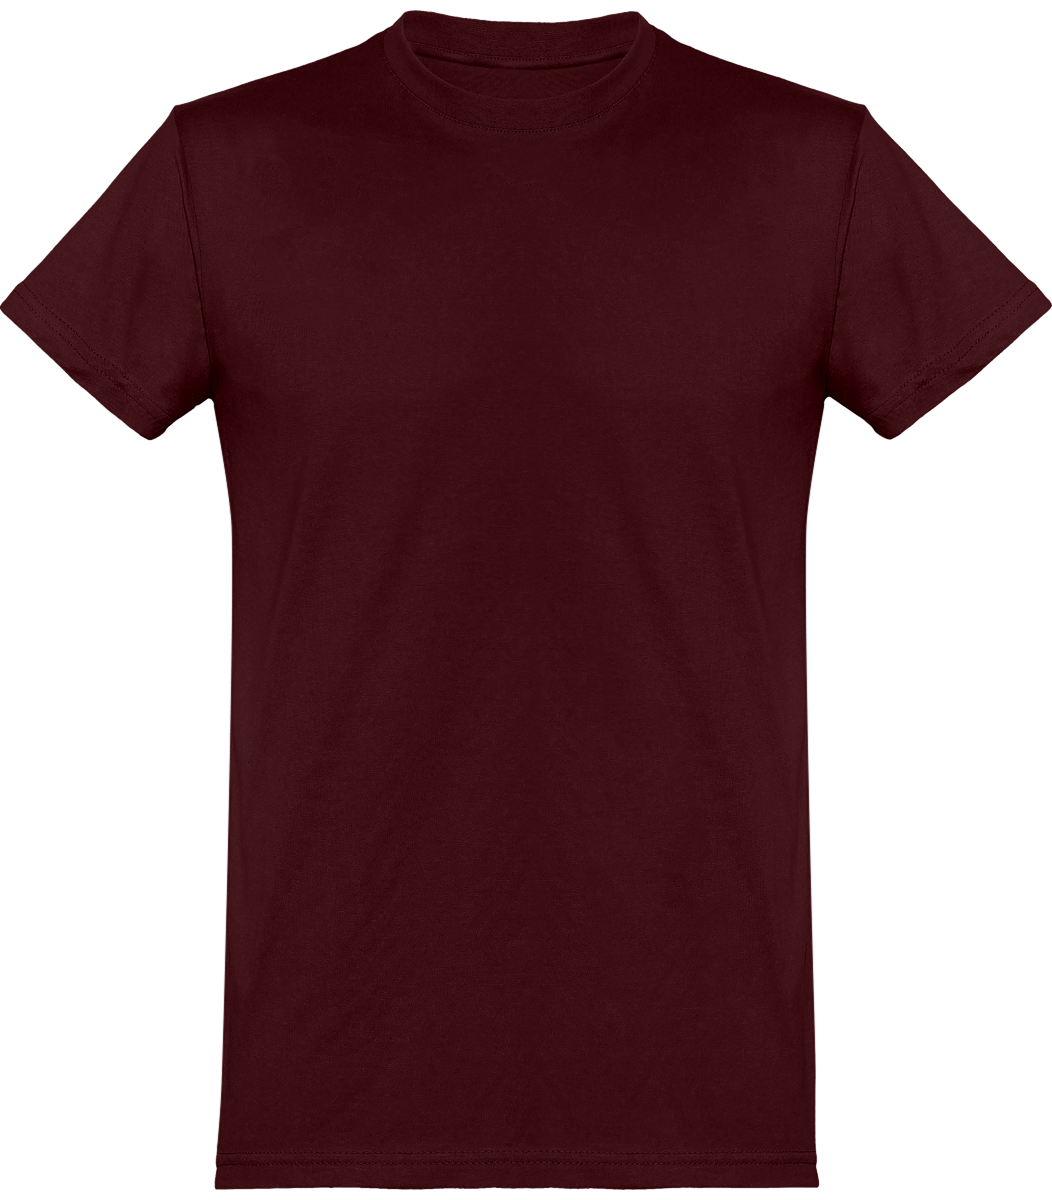 Camiseta Básica Hombre Manga Corta Personalizada En Bordado O Estampado | Tunetoo Burgundy